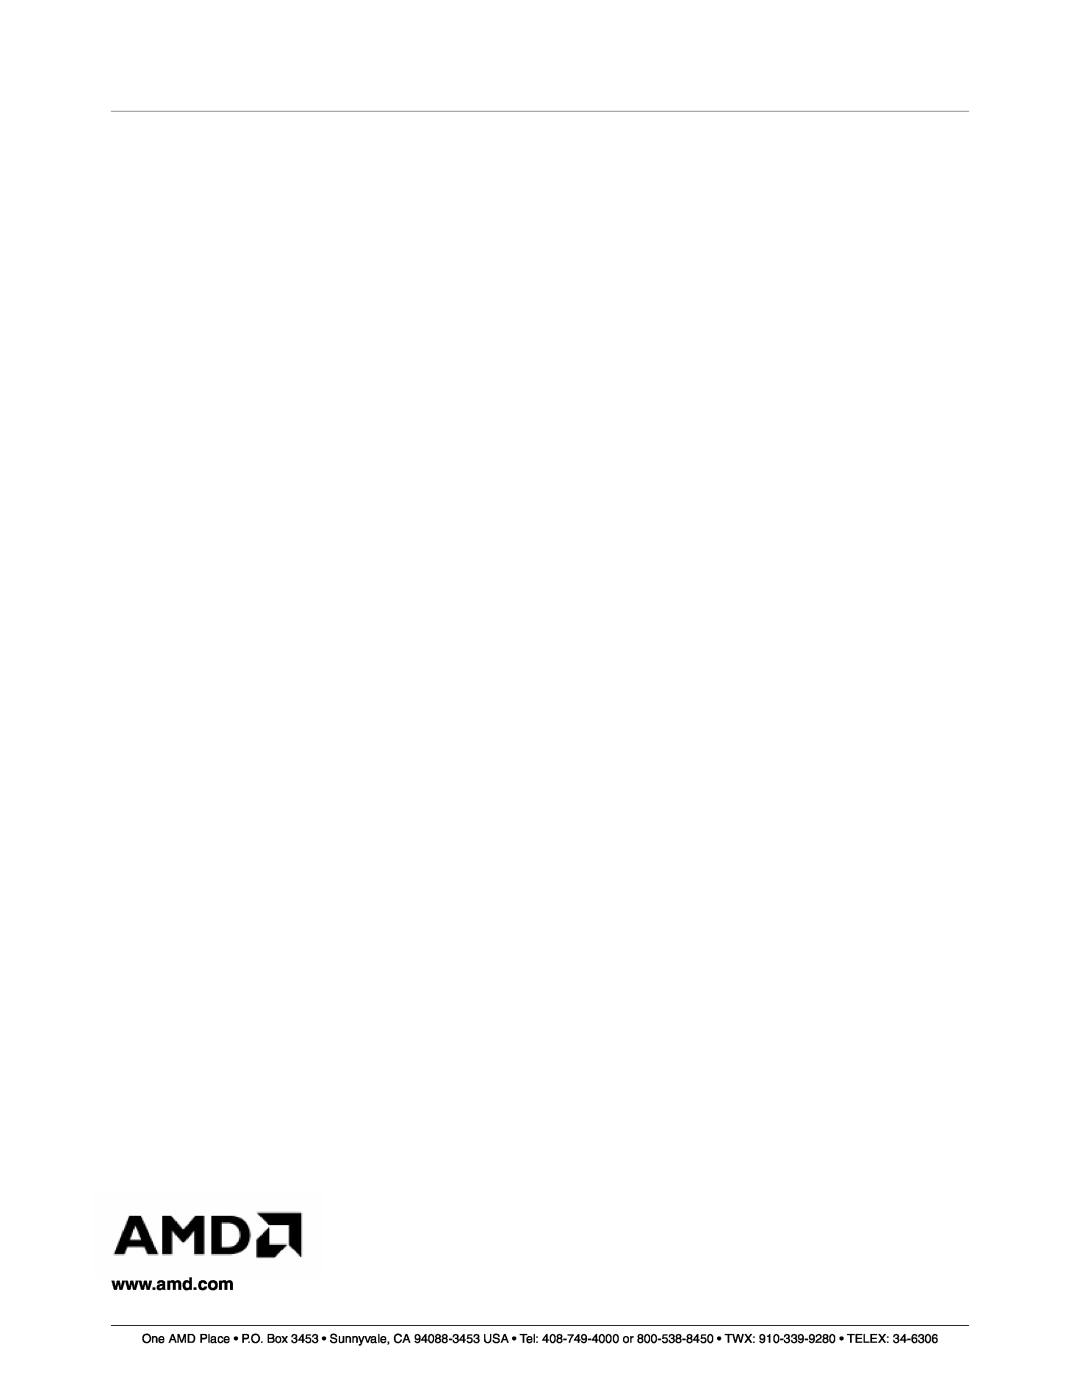 AMD CS5535 manual 